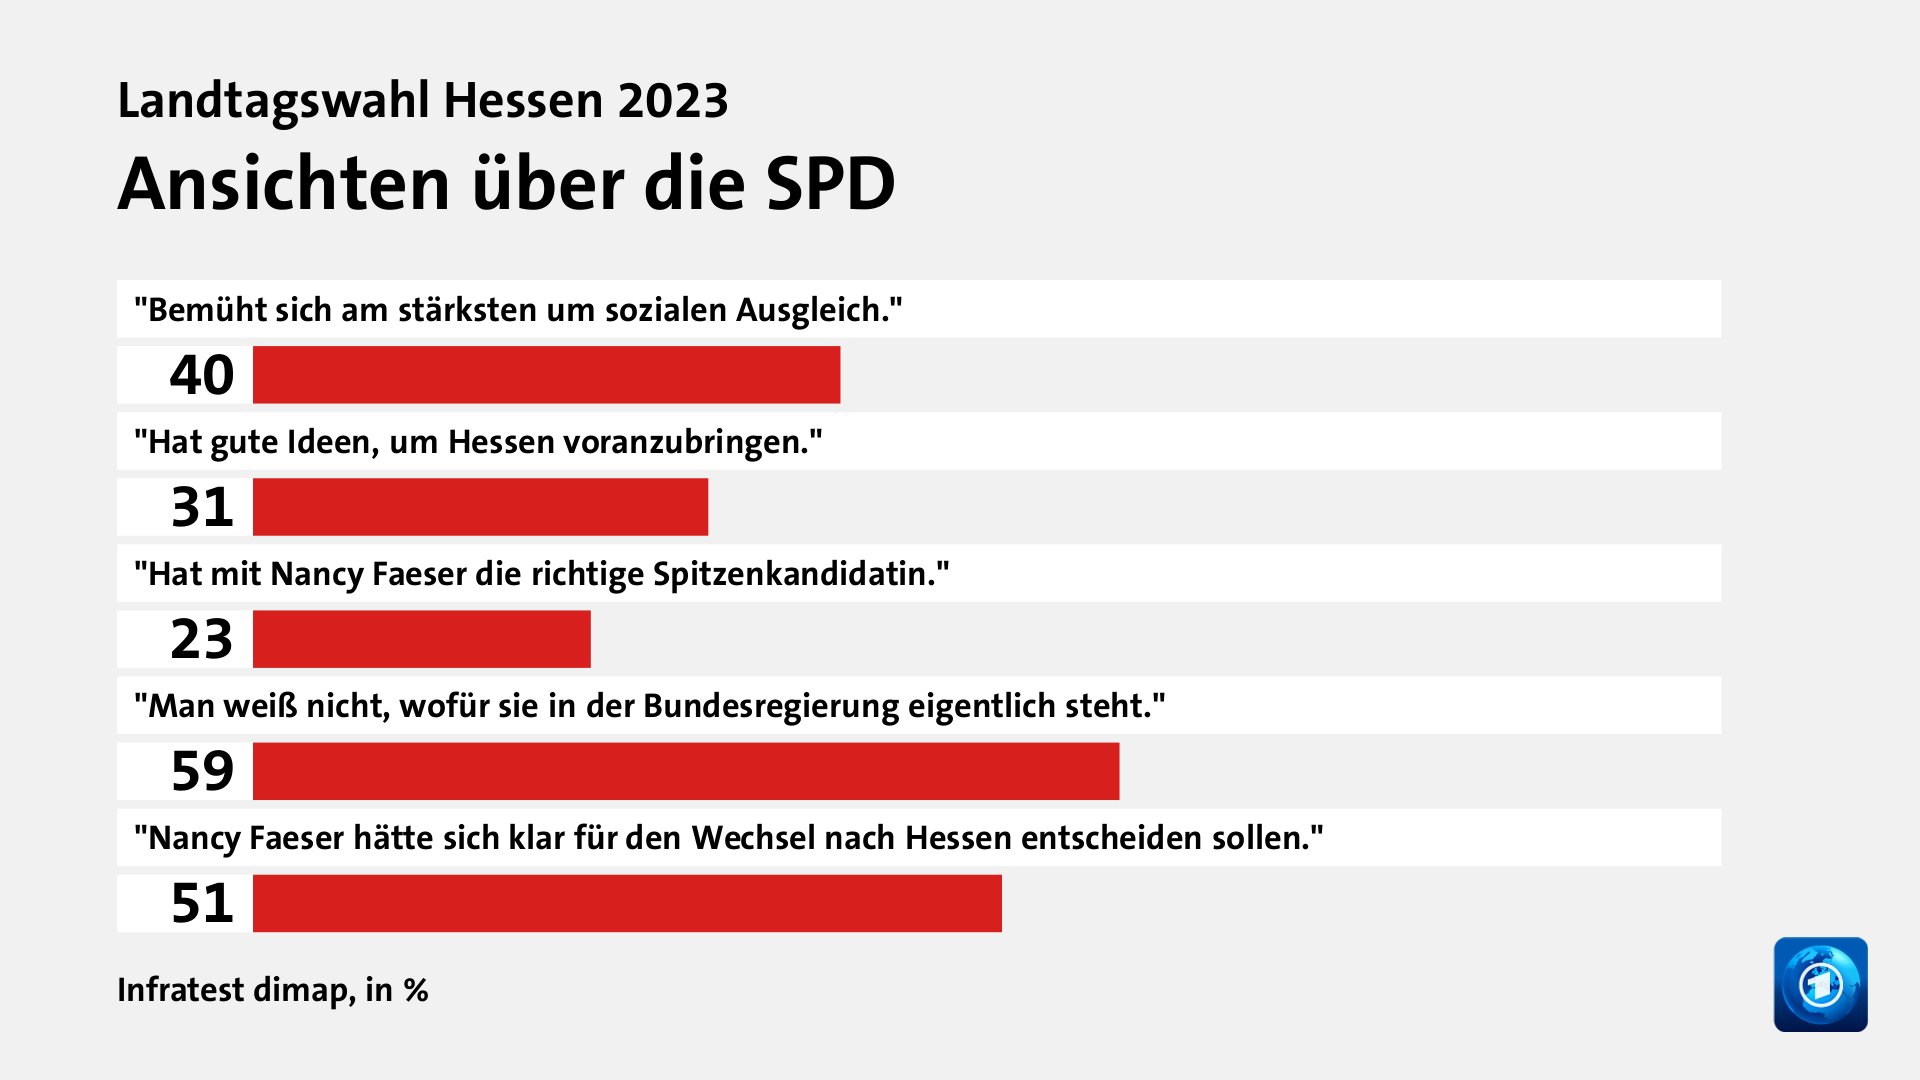 Ansichten über die SPD, in %: 